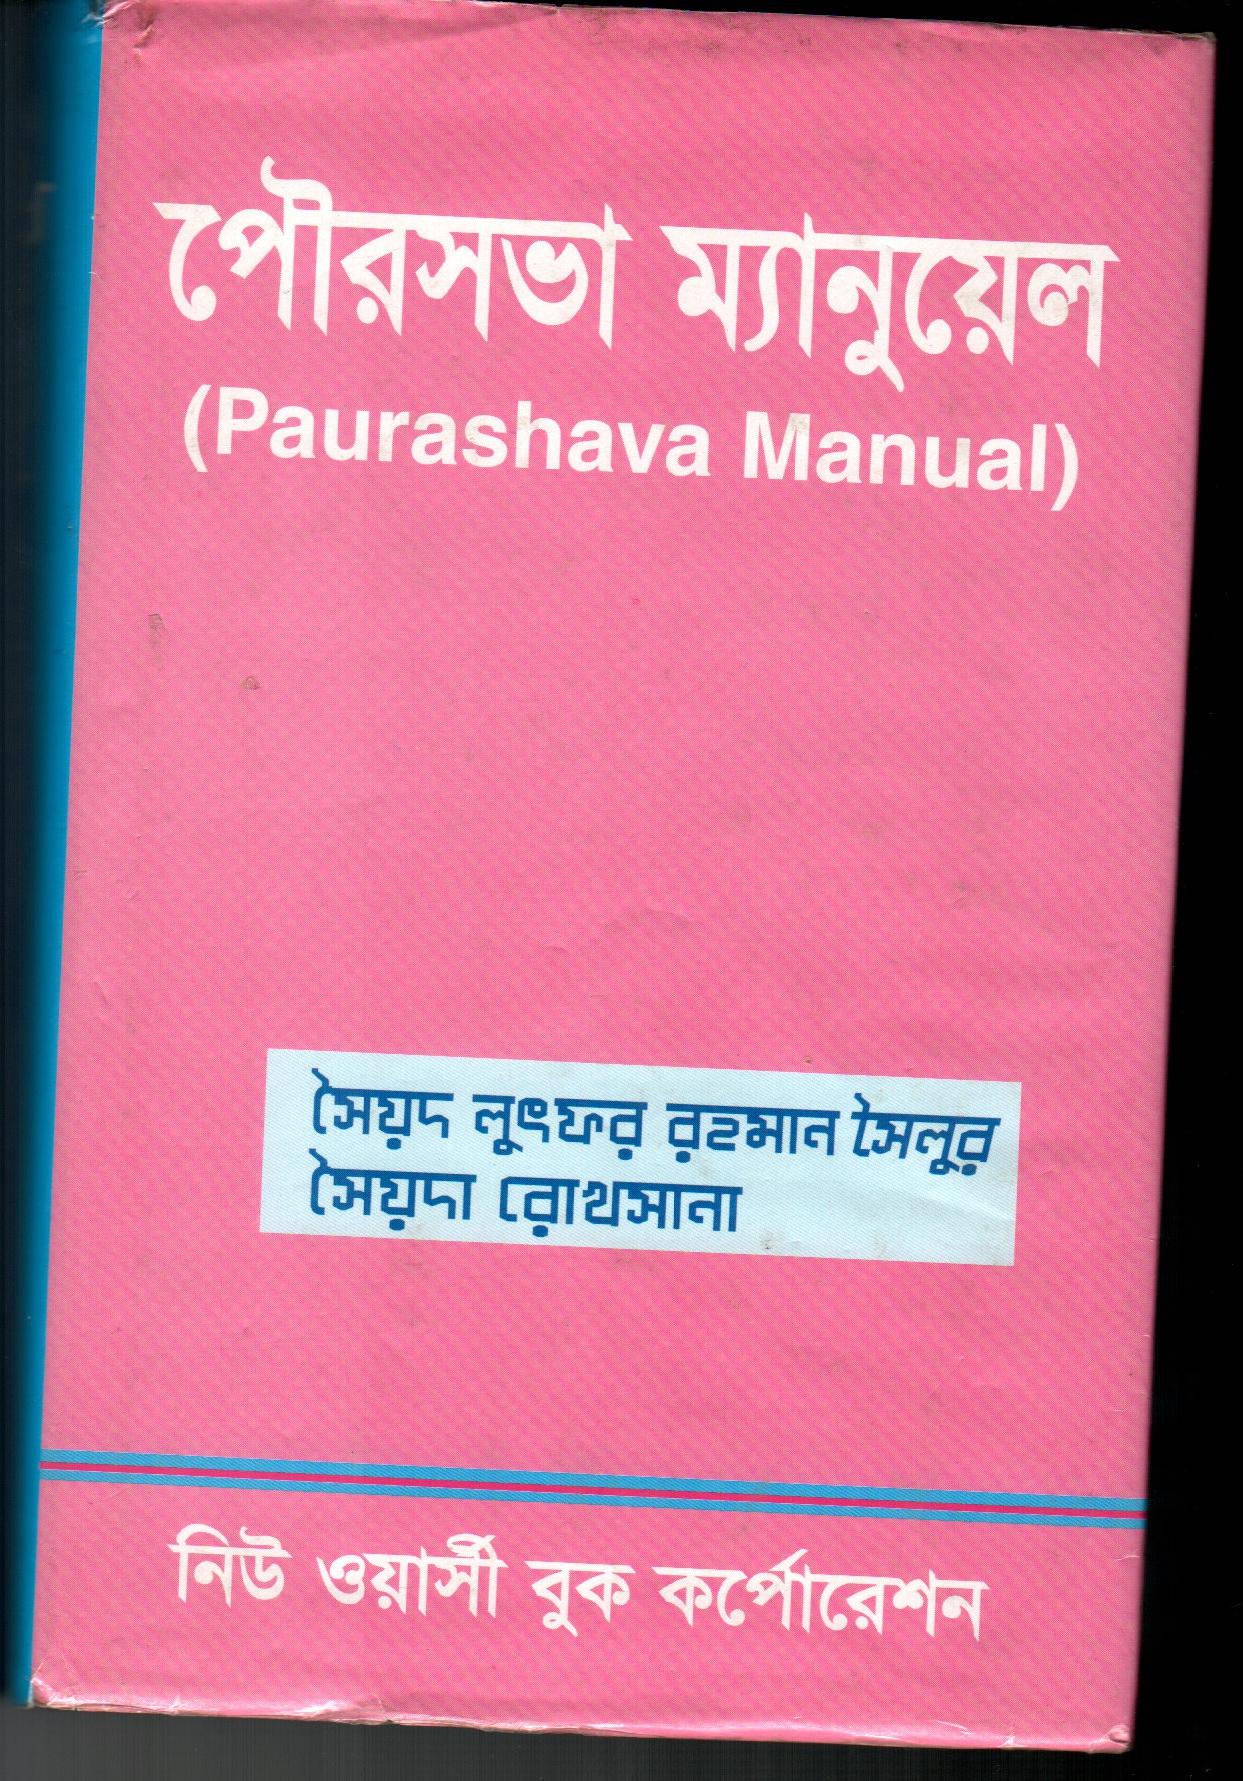 Paurashava Manual (bangla version)